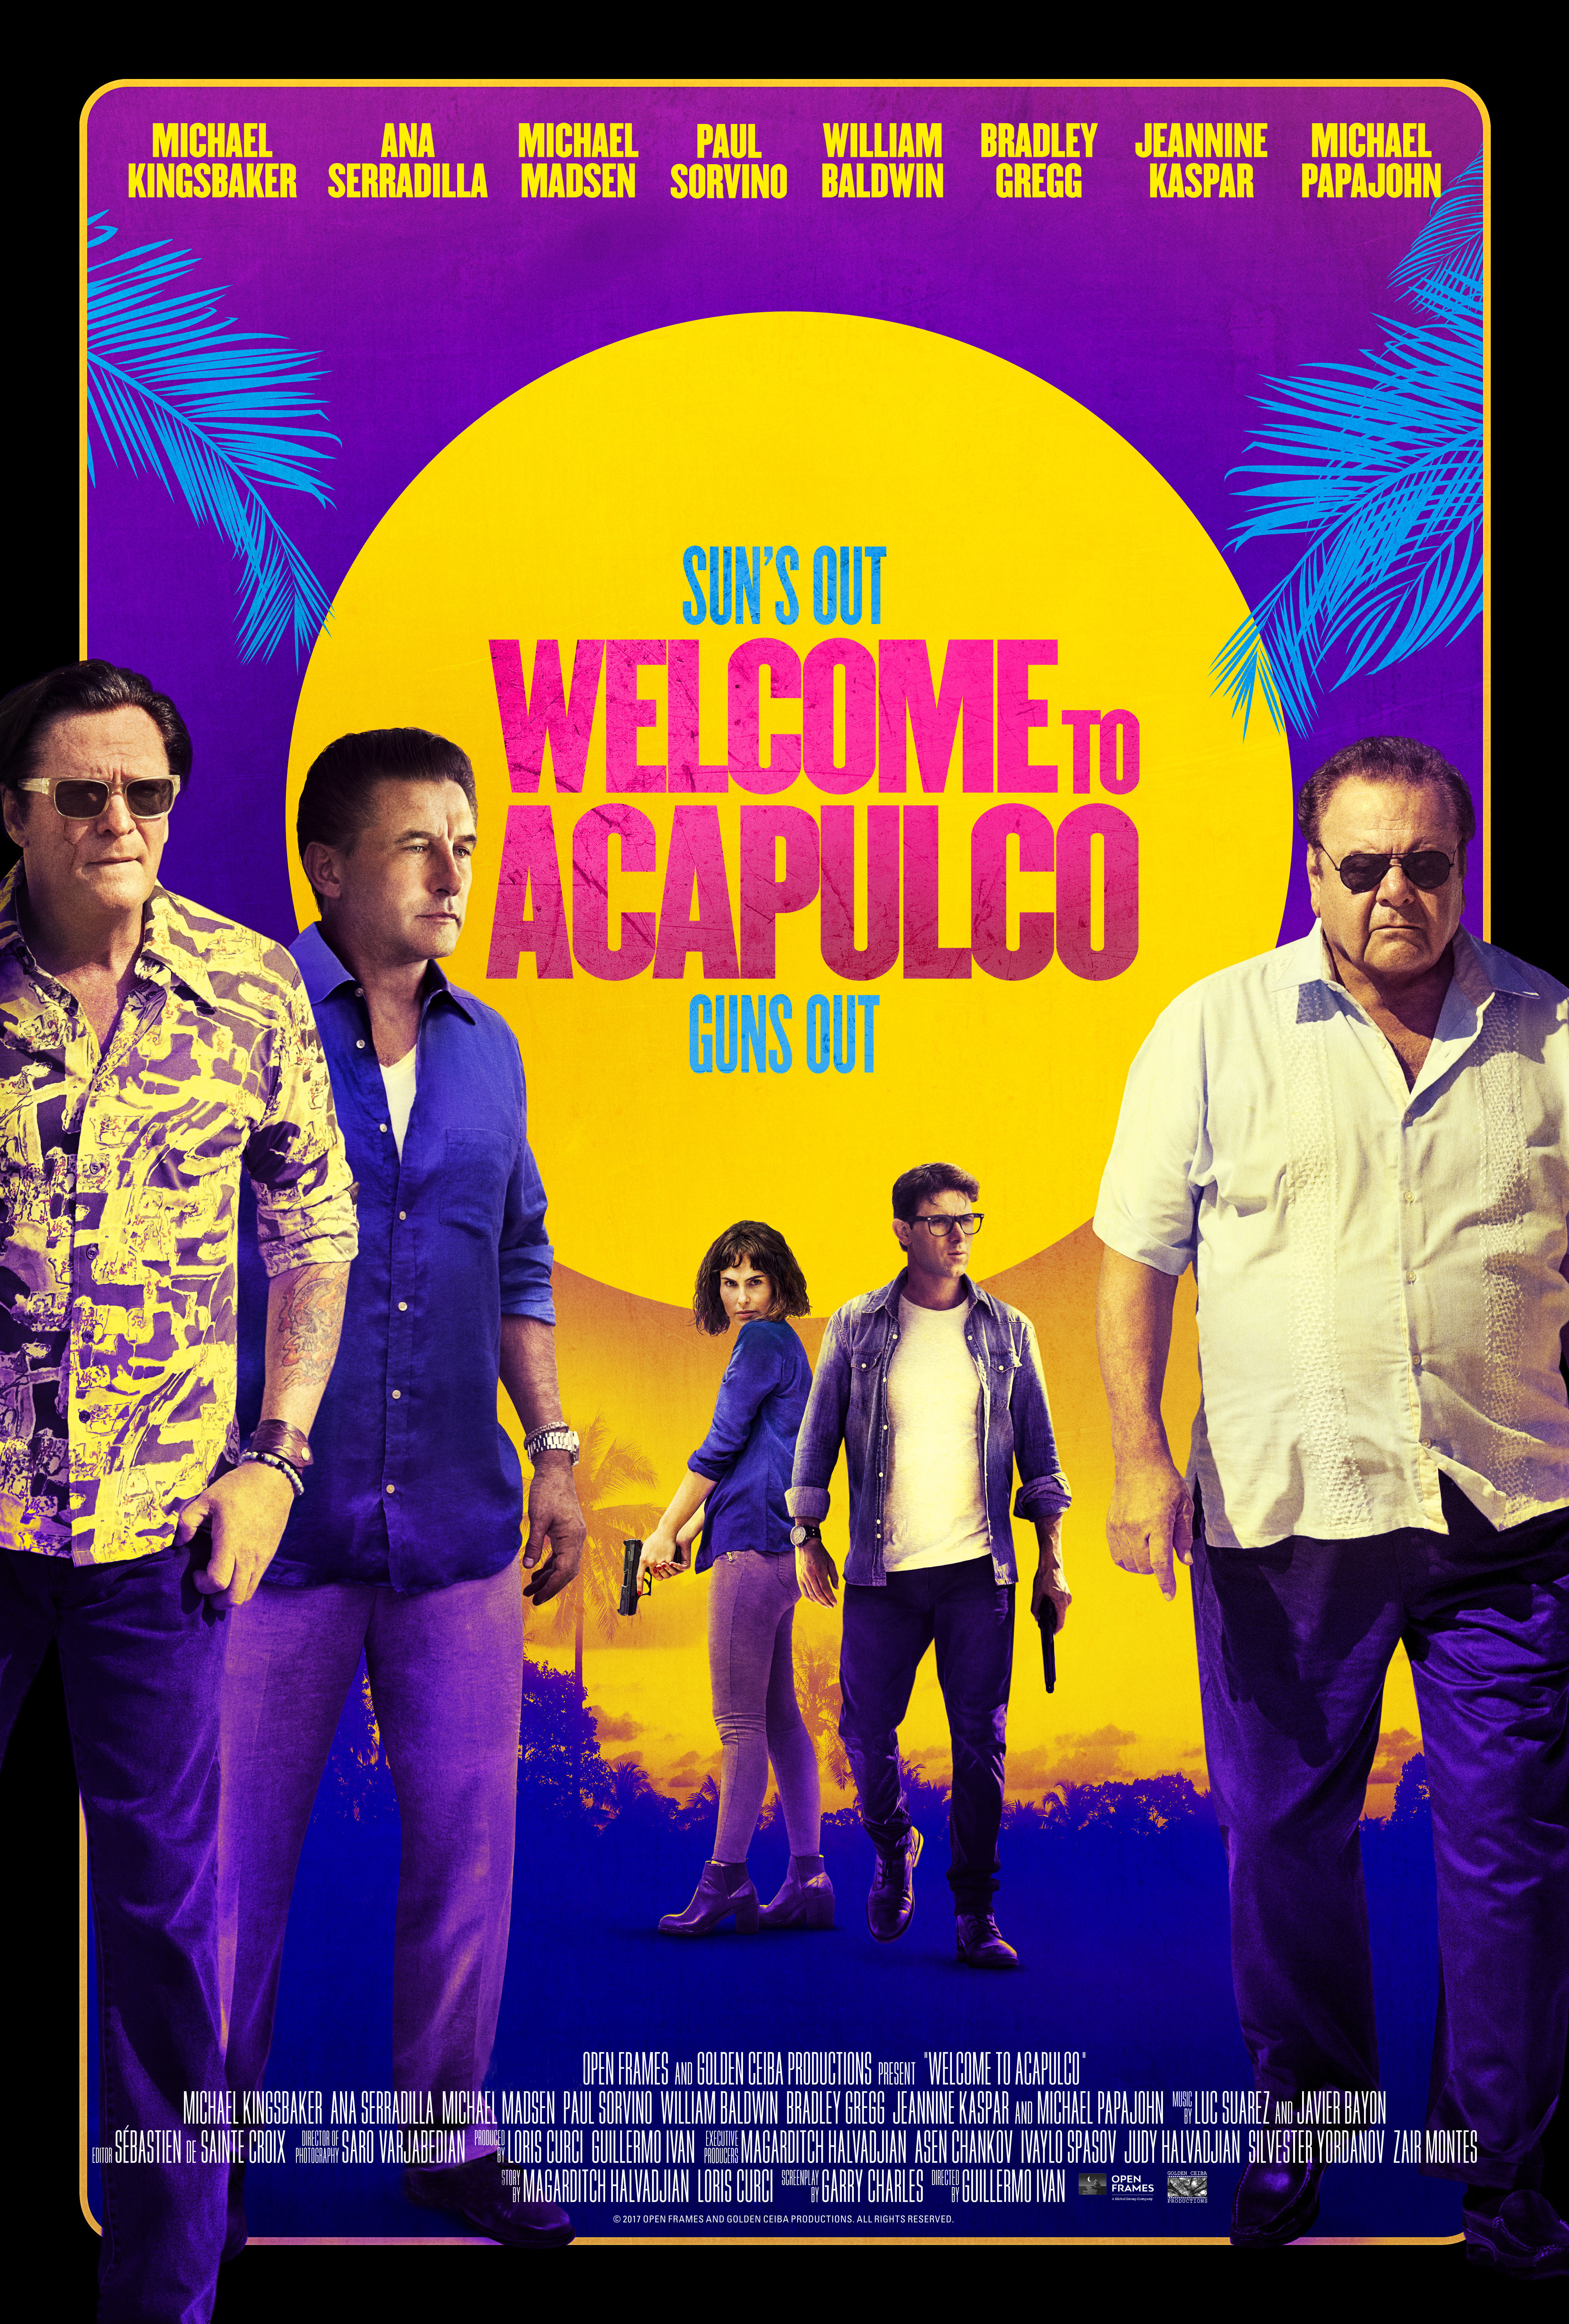 Nonton film Welcome to Acapulco layarkaca21 indoxx1 ganool online streaming terbaru